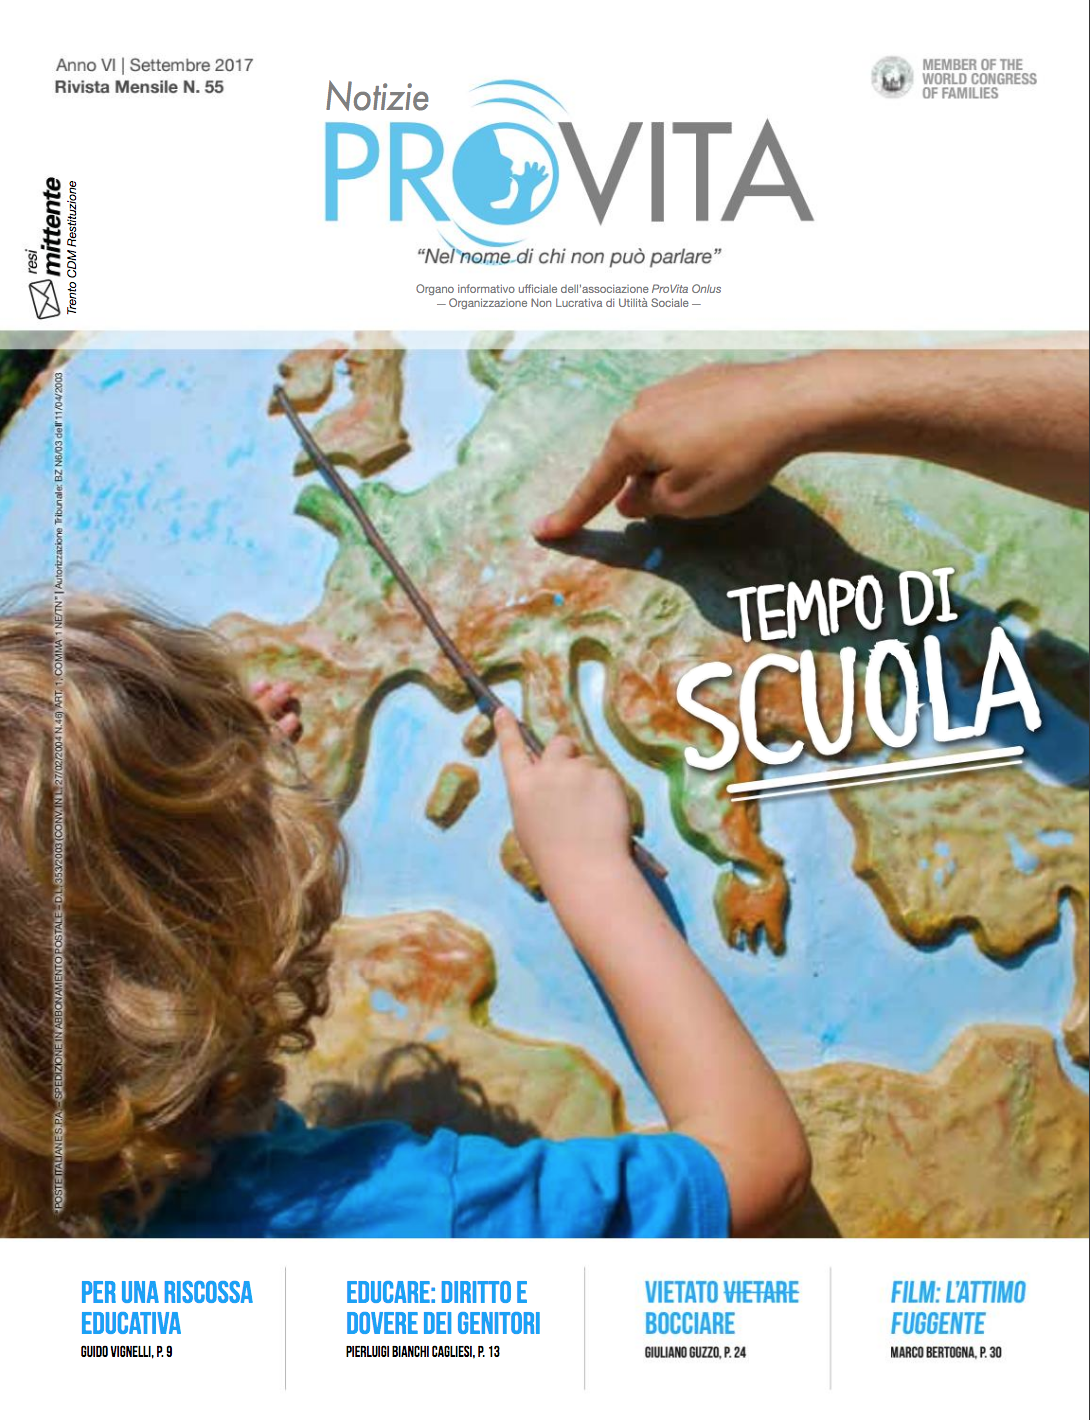 Notizie ProVita di settembre 2017 inaugura un nuovo anno sociale con il tema dell'educazione